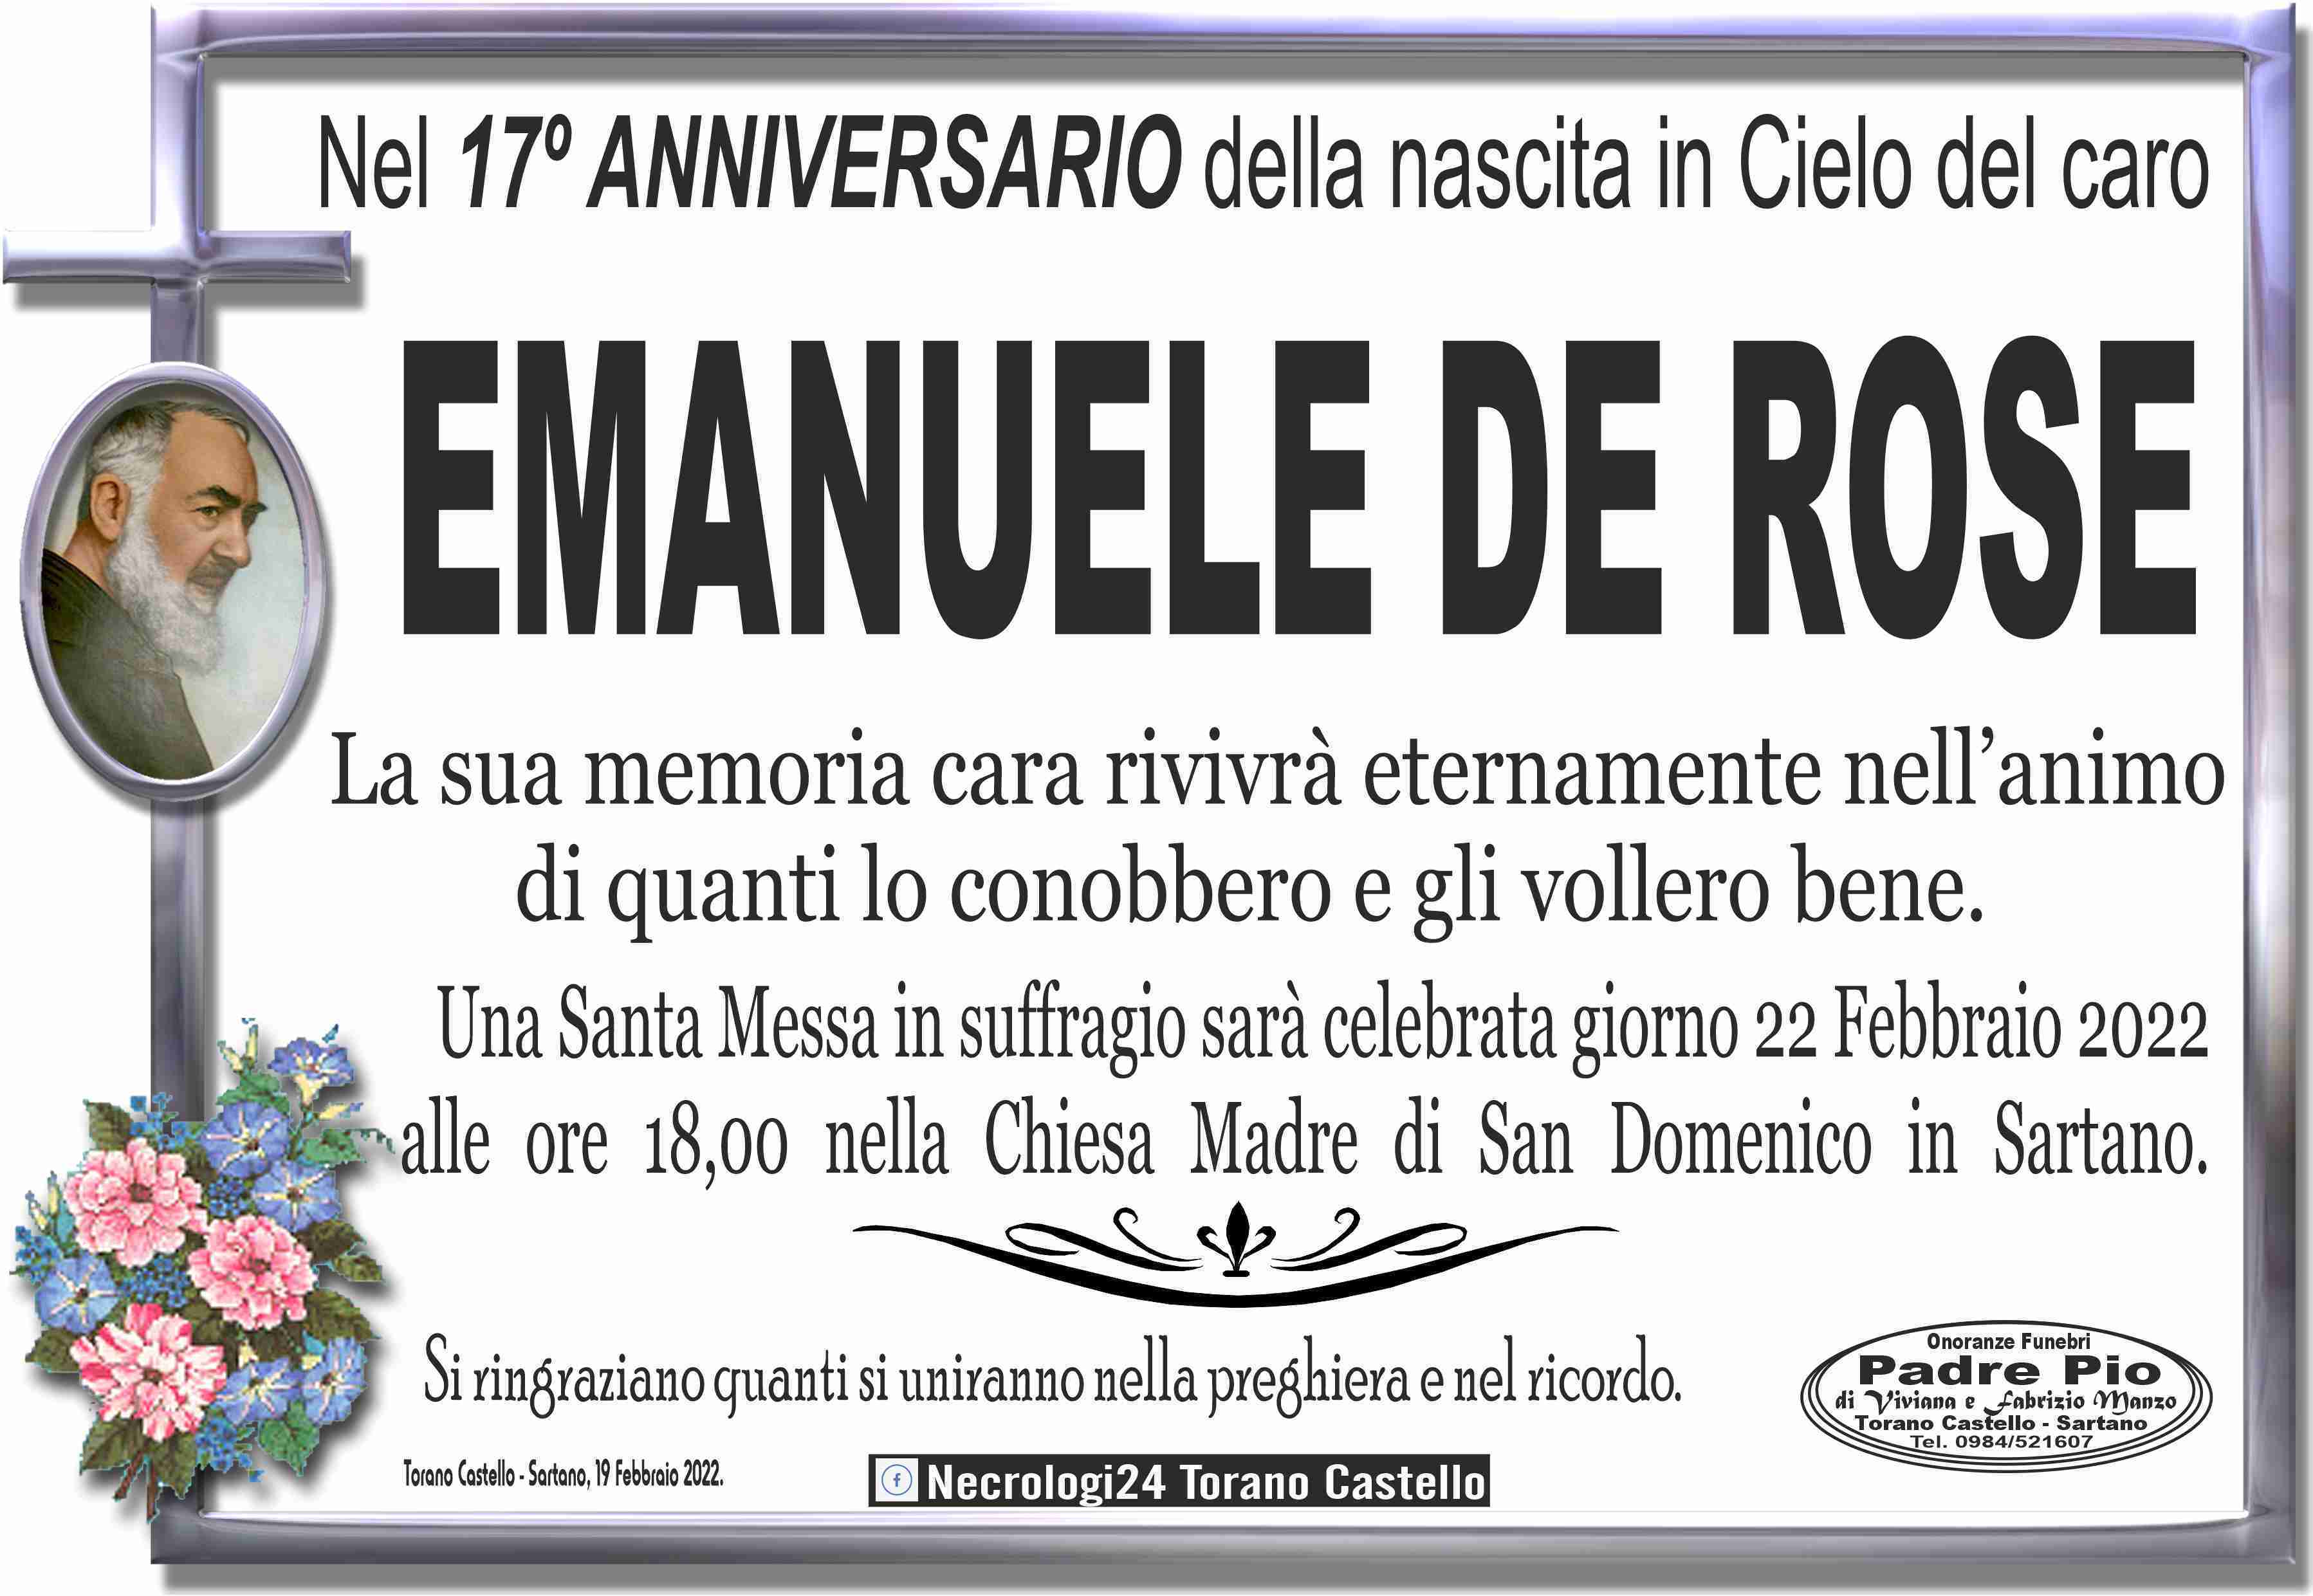 Emanuele De Rose